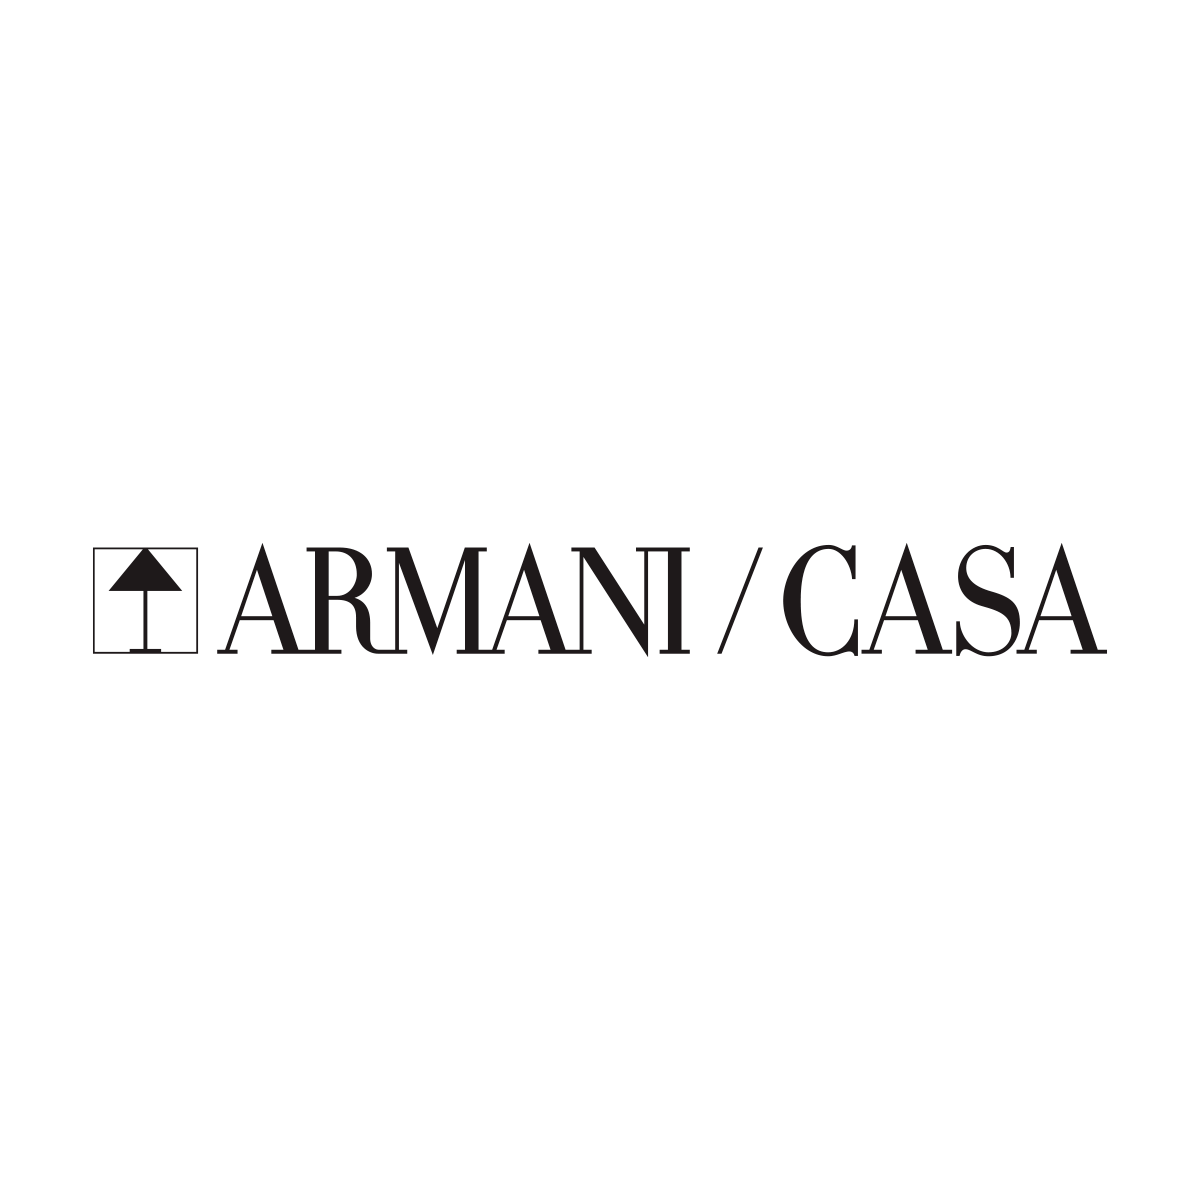 Armani/Casa Logo